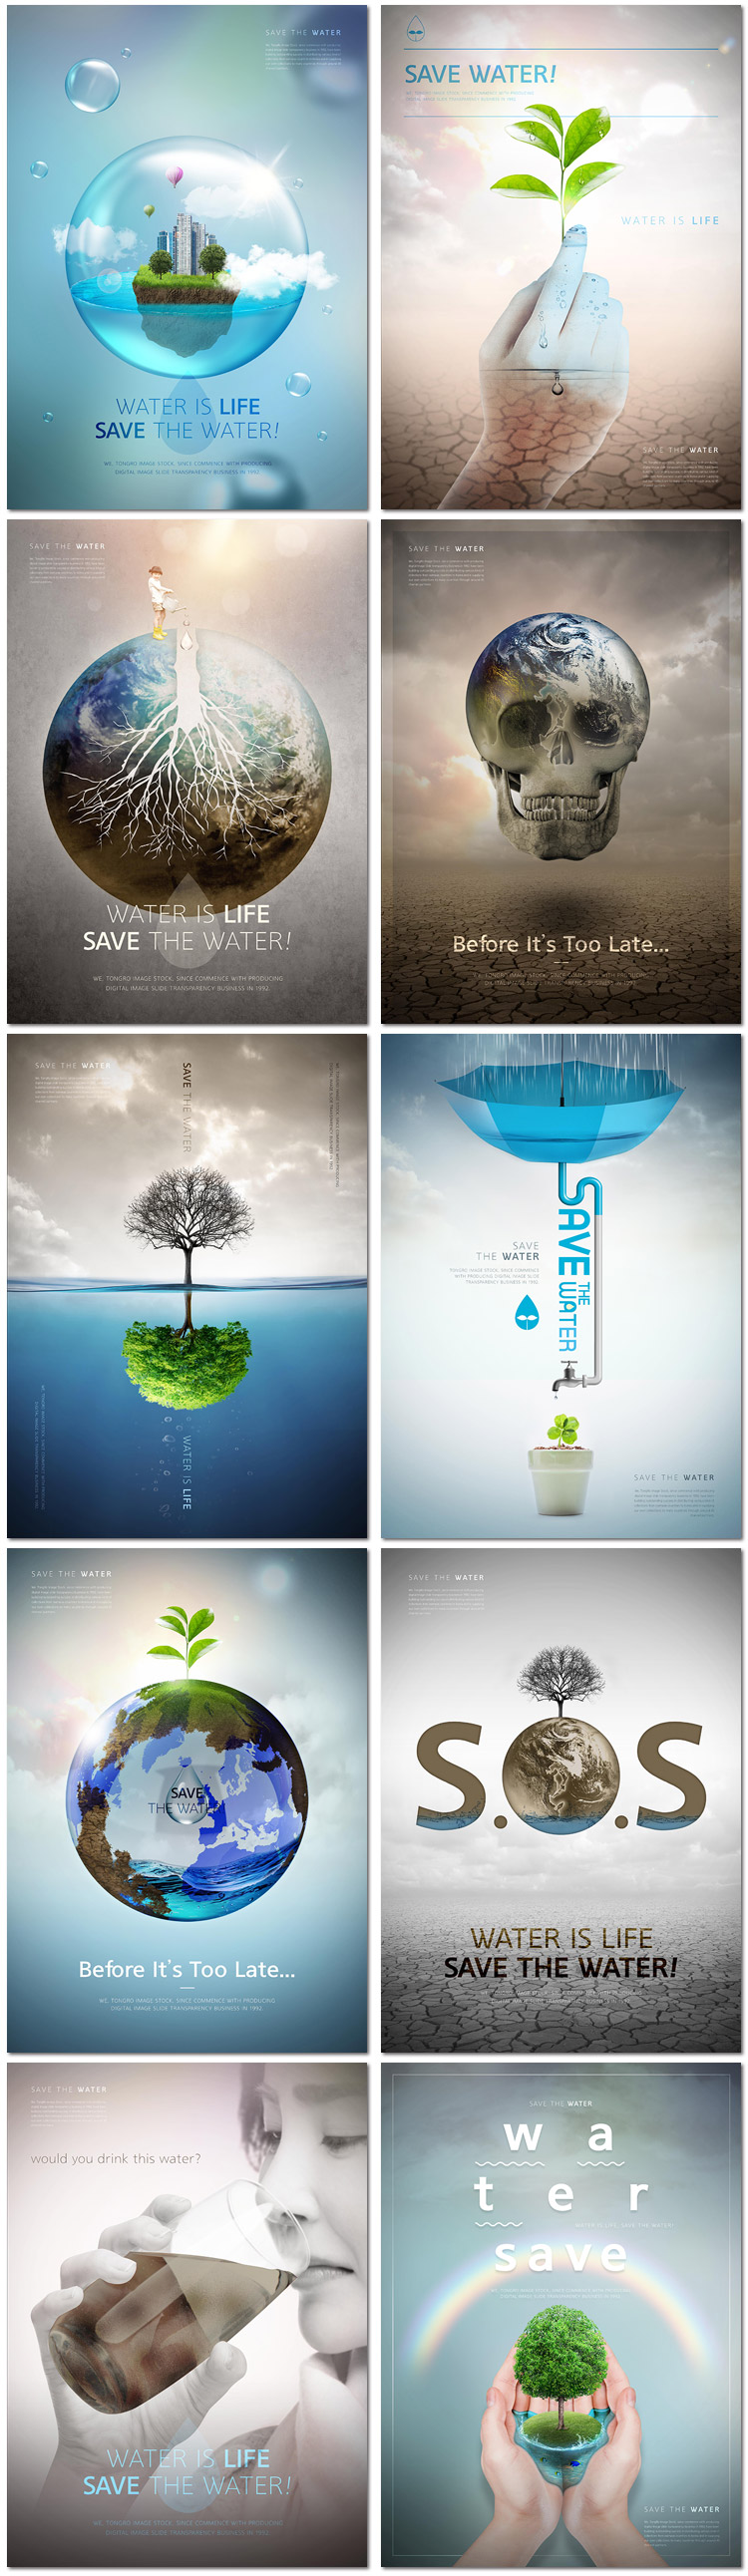 绿色地球日爱护家园植树环保科技公益广告海报psd模板设计素材